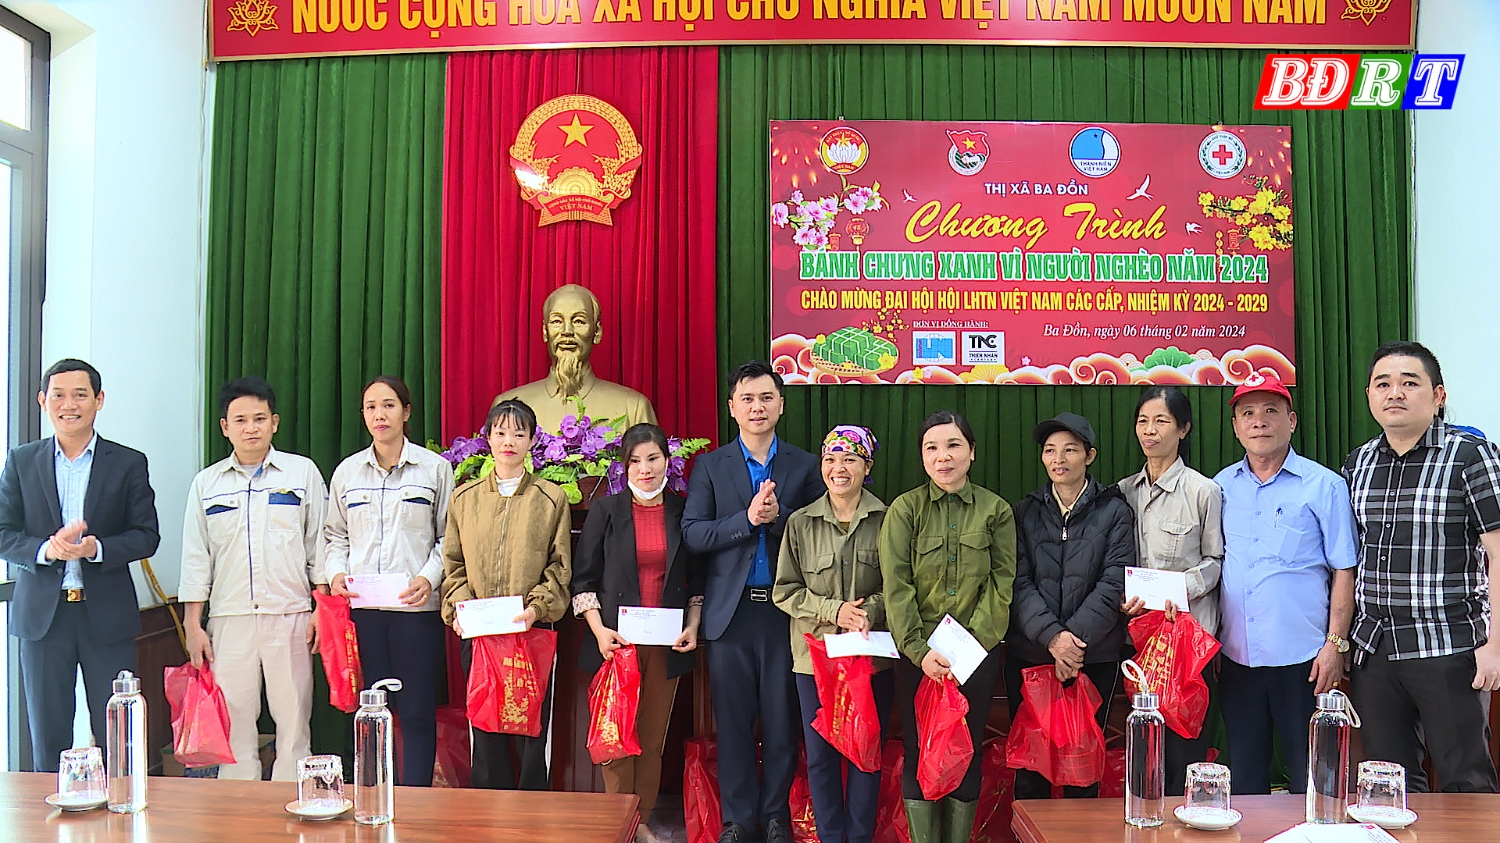 Đồng chí Nguyễn Văn Tình - Phó Chủ tịch UBND thị xã và các mạnh thường quân trao quà cho các cô chú nhân viên vệ sinh môi trường thuộc Ban Quản lý dự án các công trình công cộng thị xã